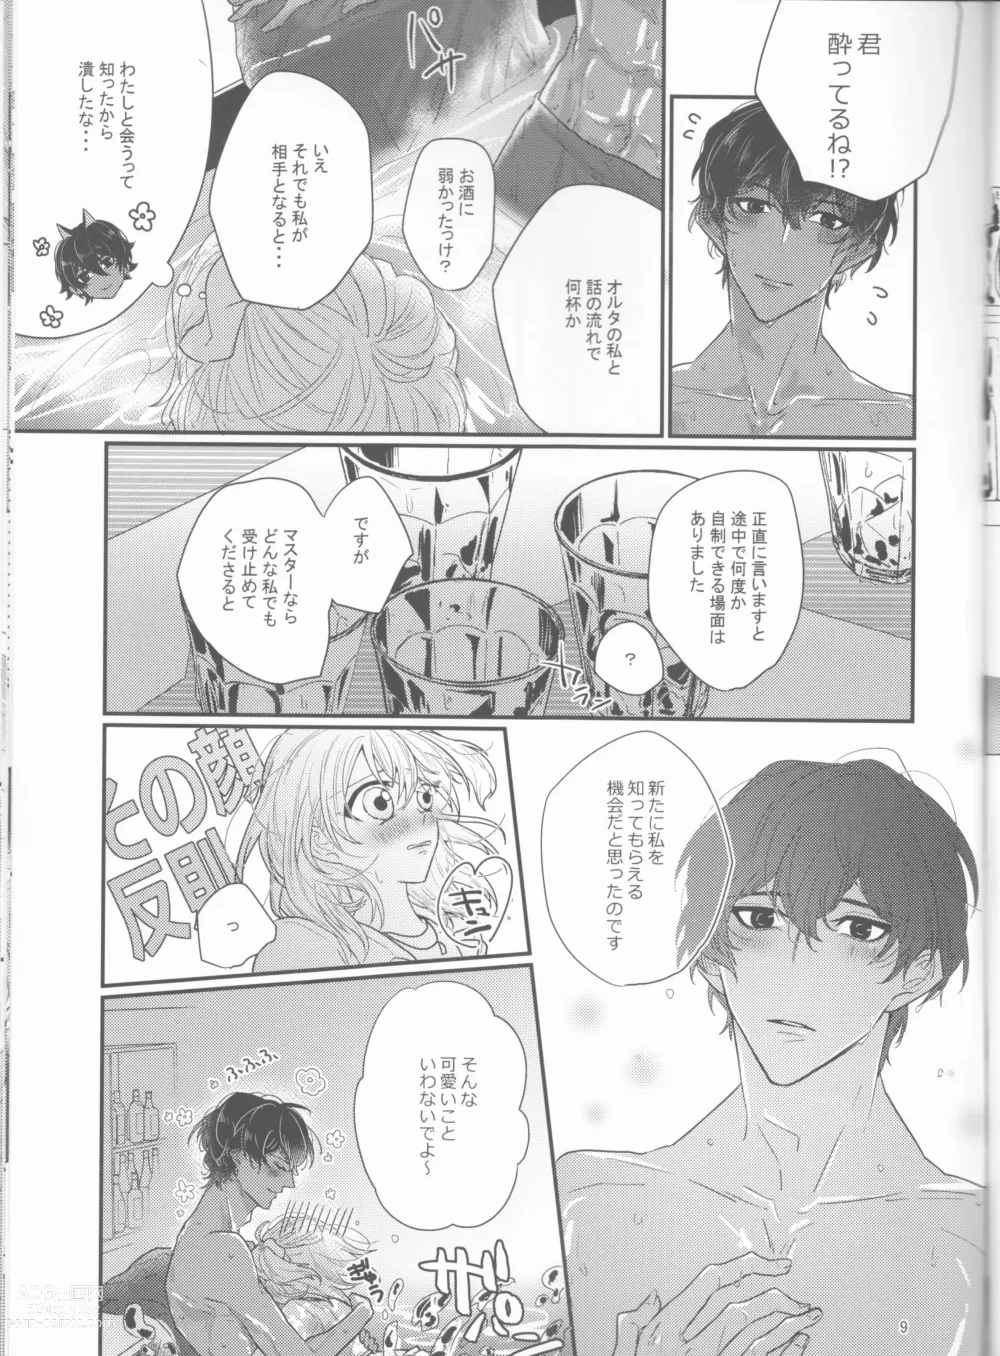 Page 9 of doujinshi Suiai